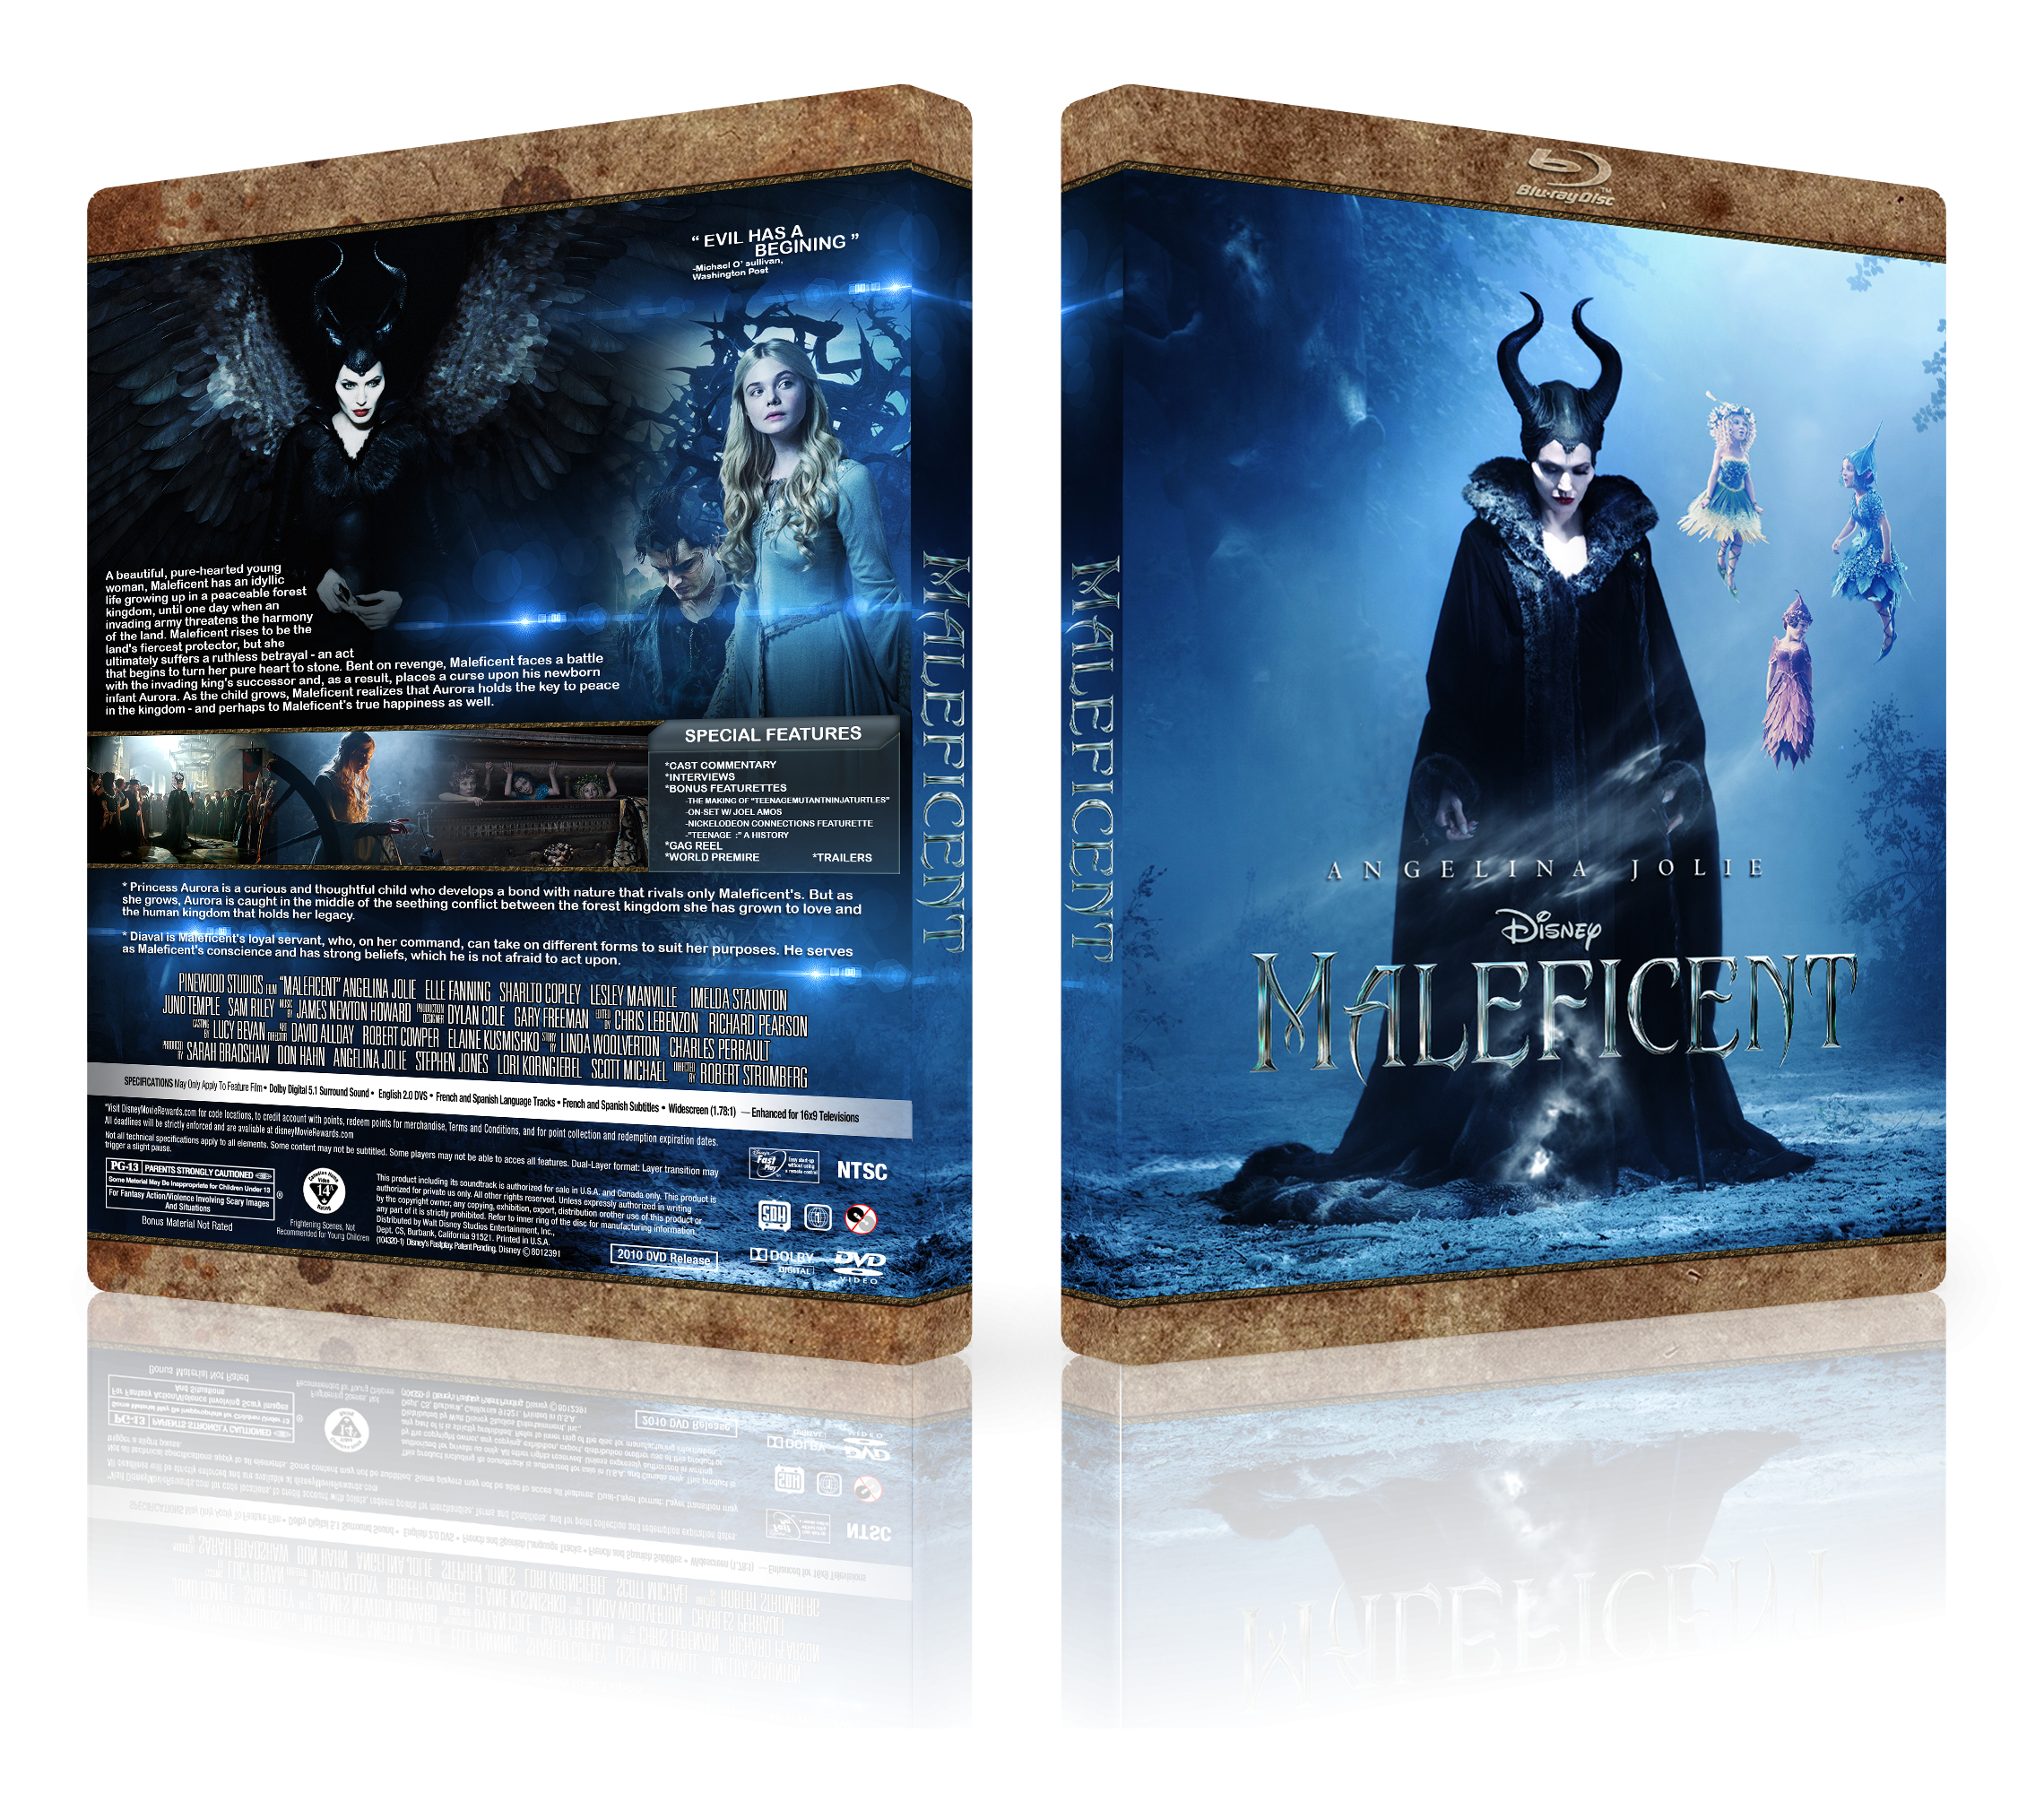 Maleficent box cover